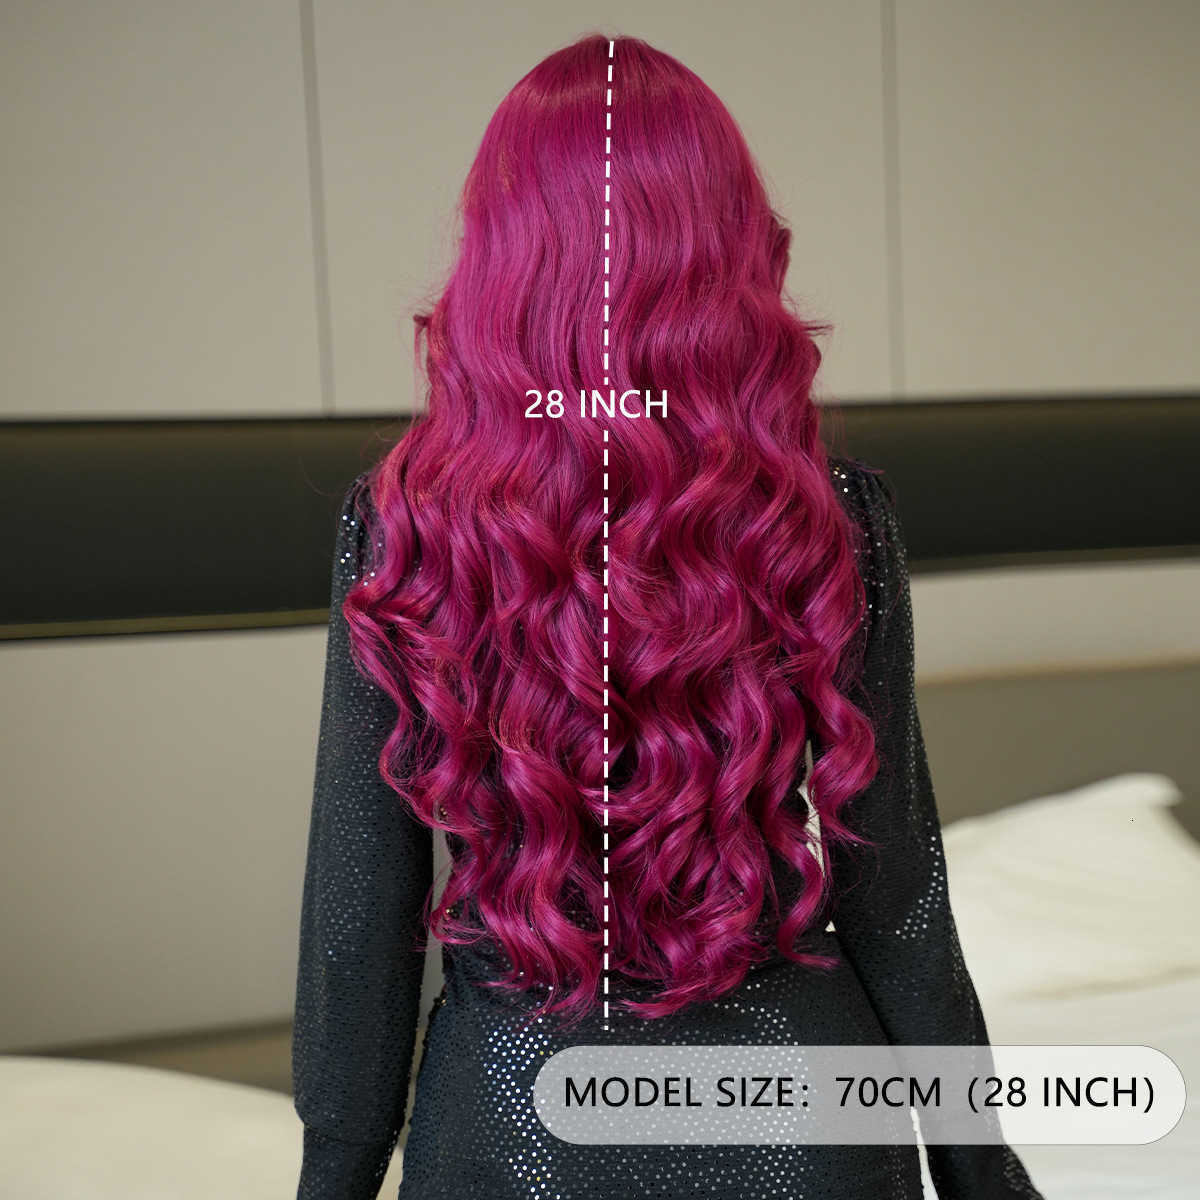 ボディリトルヘアTロングレースかつらの女性の巻き毛の紫色の紫色の赤い合成繊維フルヘッドセット